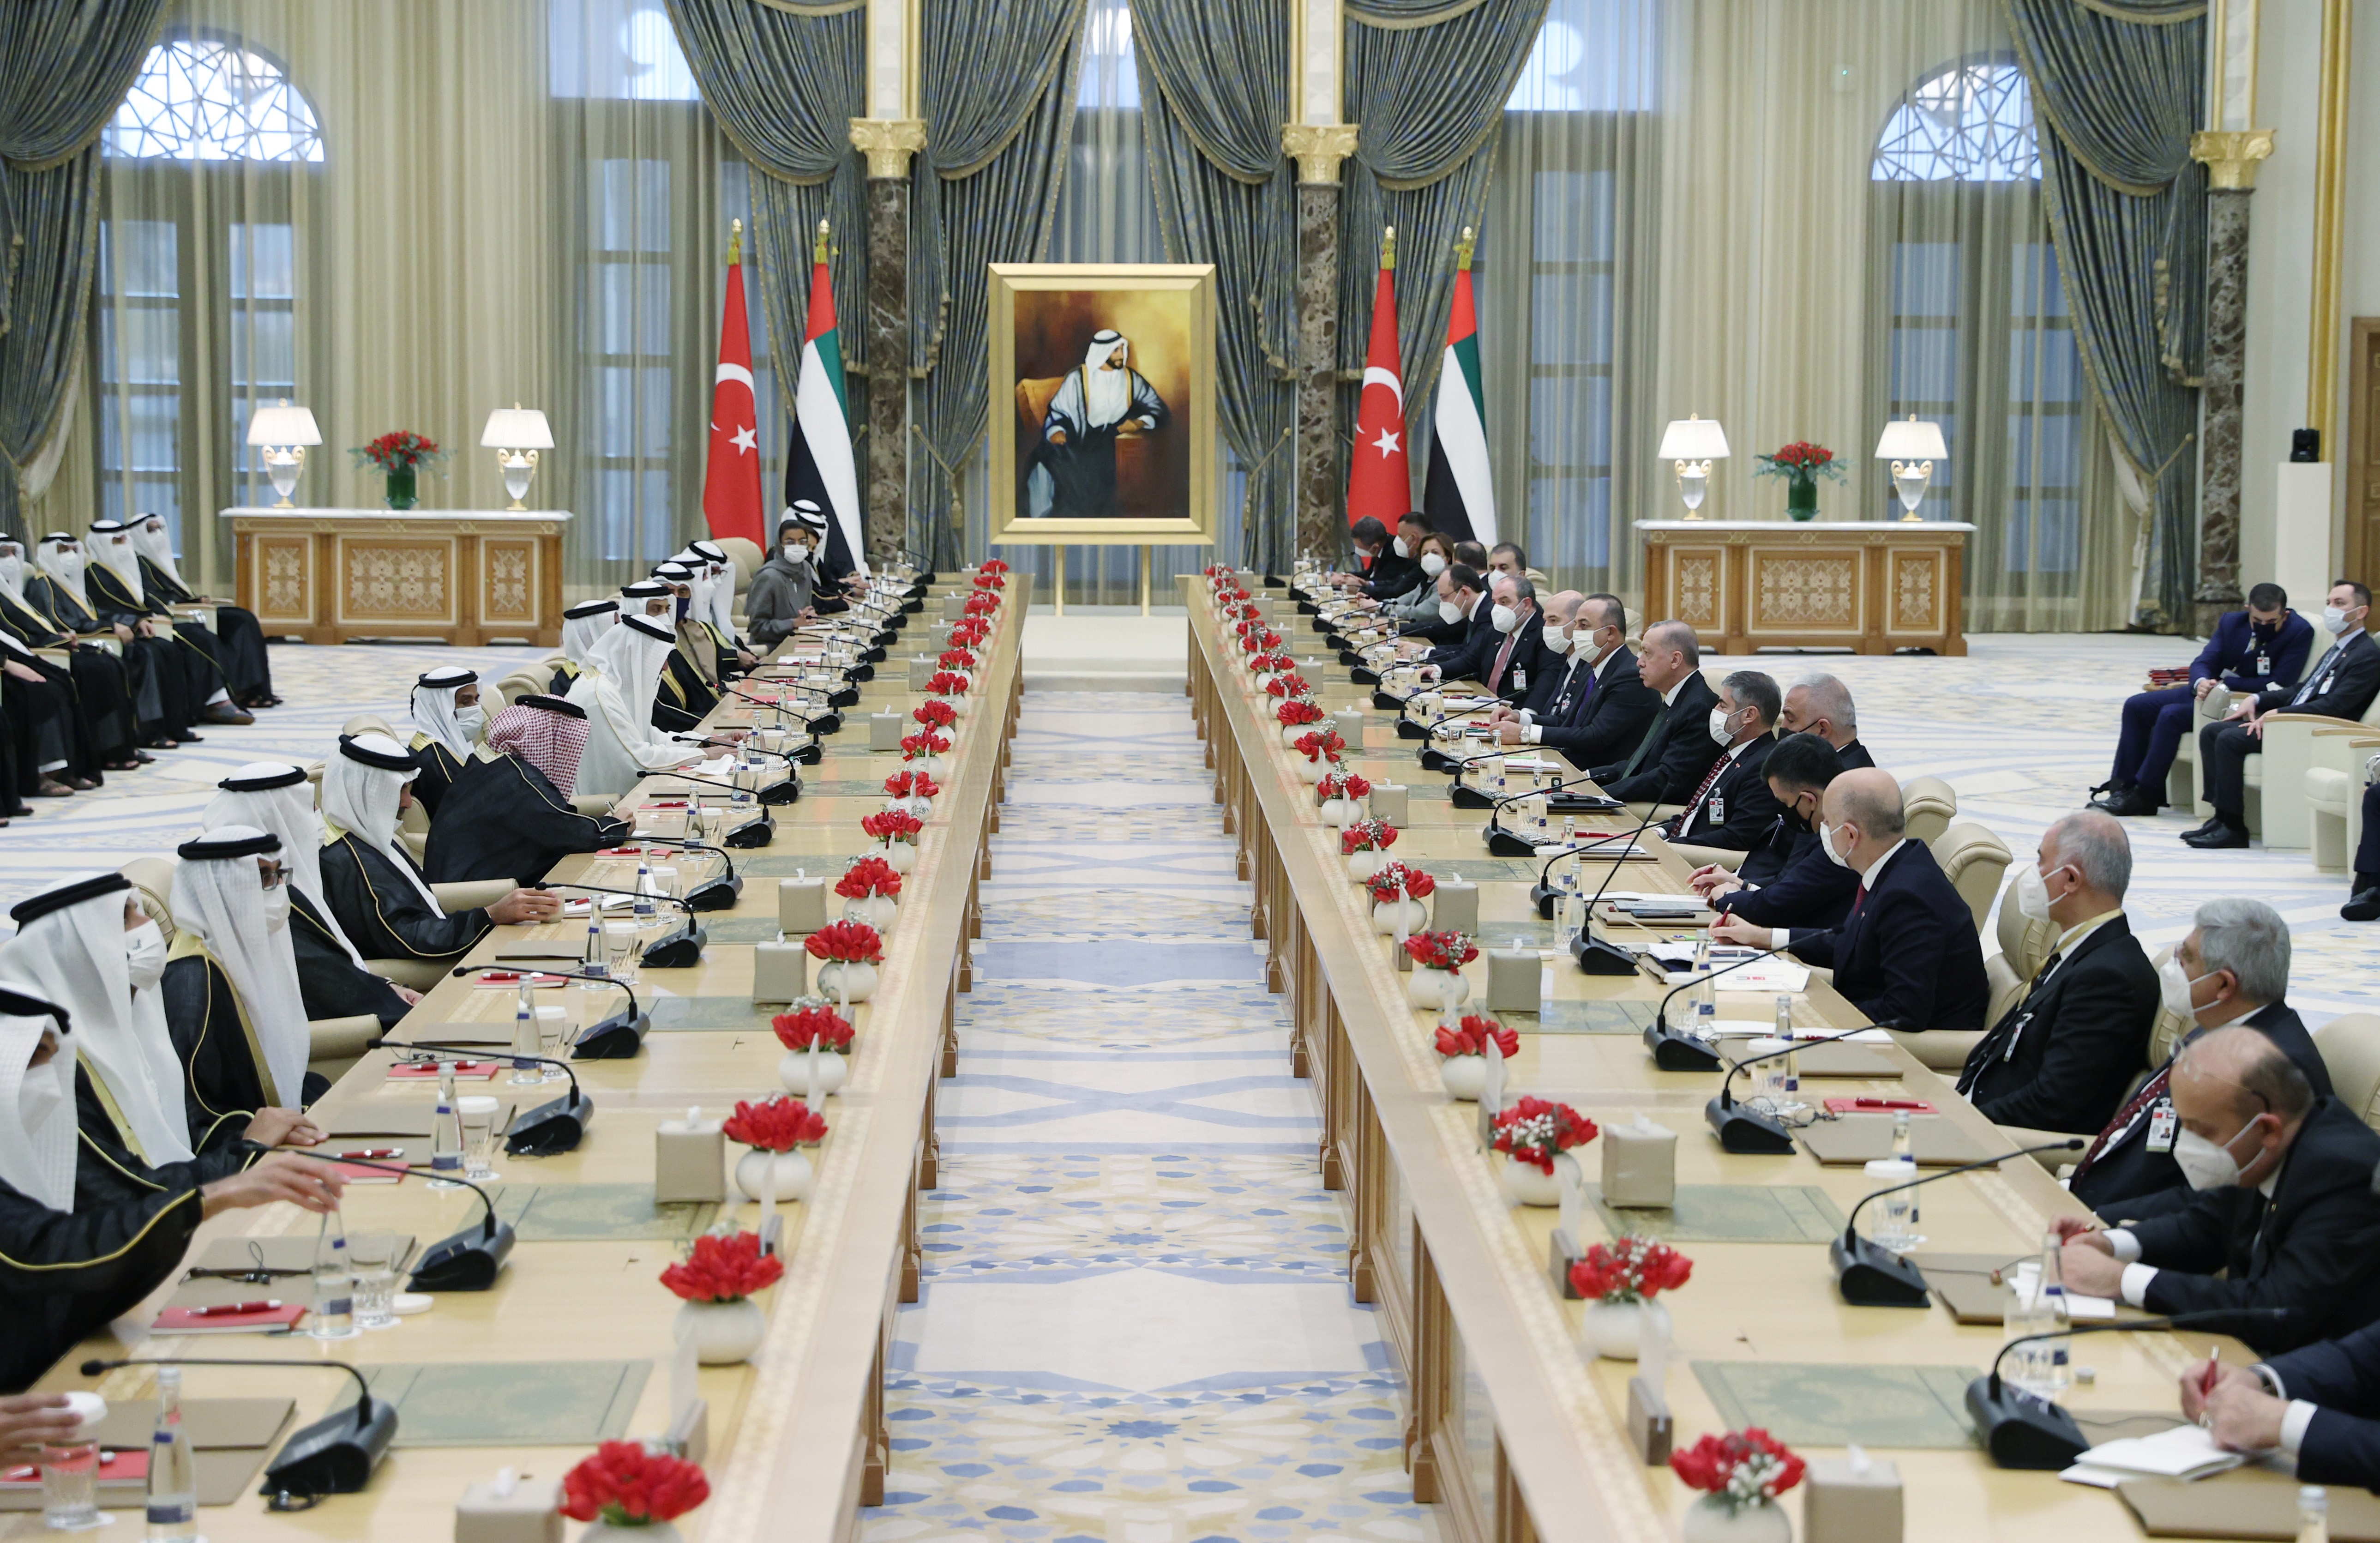 Cumhurbaşkanı Recep Tayyip Erdoğan, Abu Dabi Veliaht Prensi Şeyh Muhammed bin Zayed El Nahyan’ın daveti üzerine TSİ 15:40 sıralarında Birleşik Arap Emirliklerine geldi.